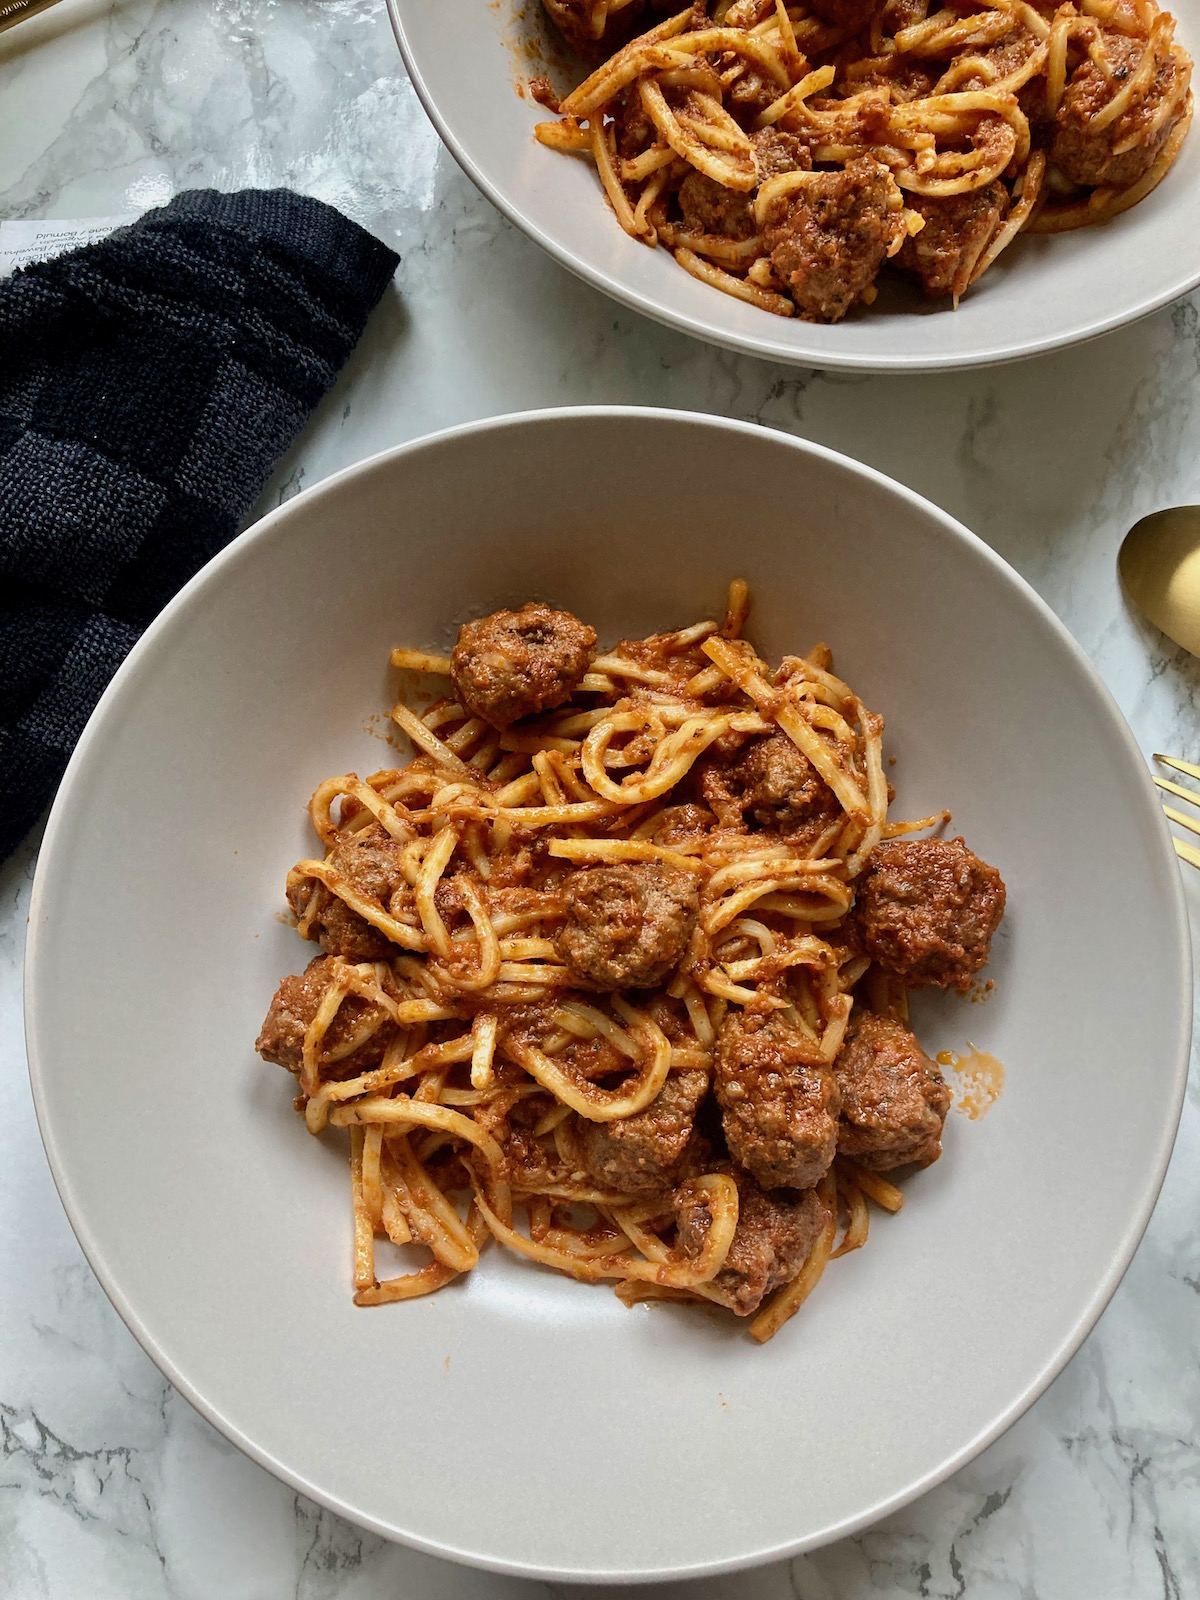 Spaghetti chetogenici con polpette al sugo - ketowithsimona's blog